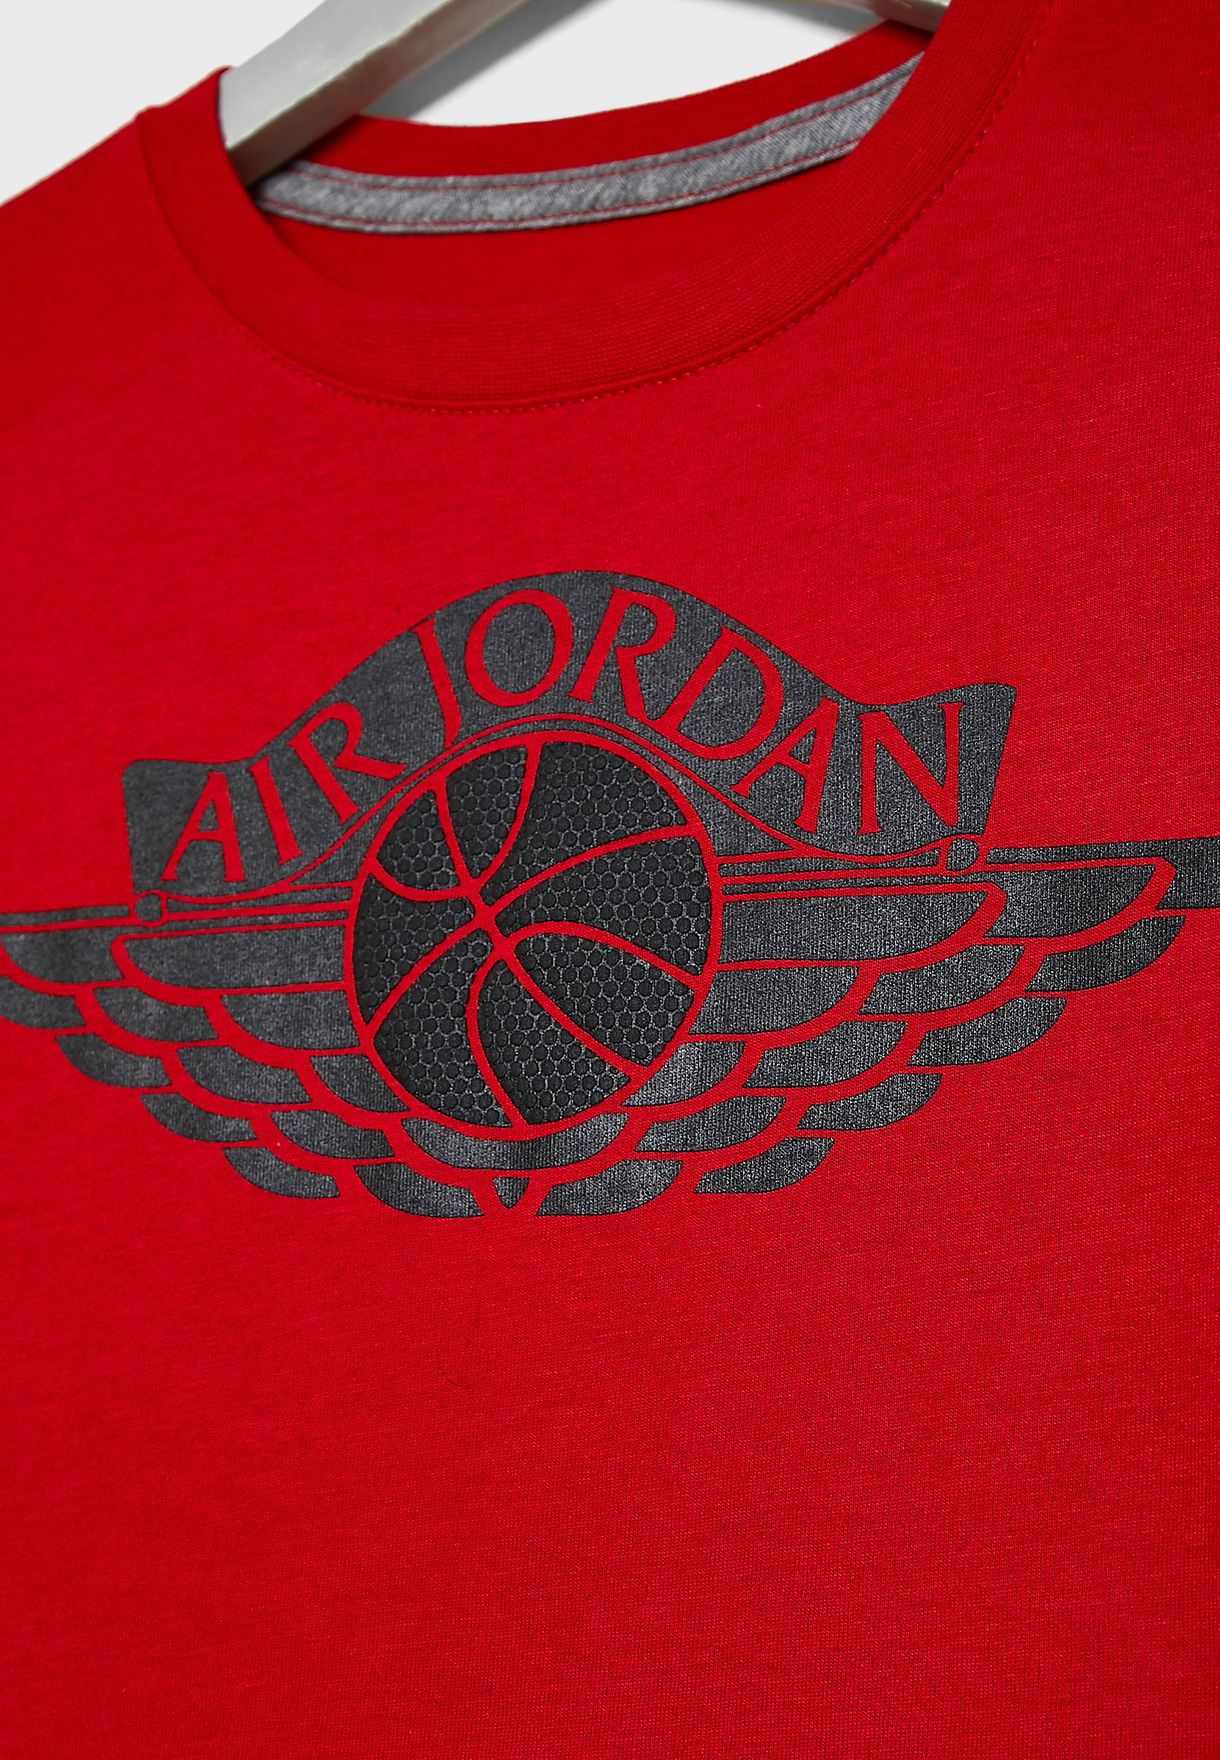 air jordan wings logo shirt